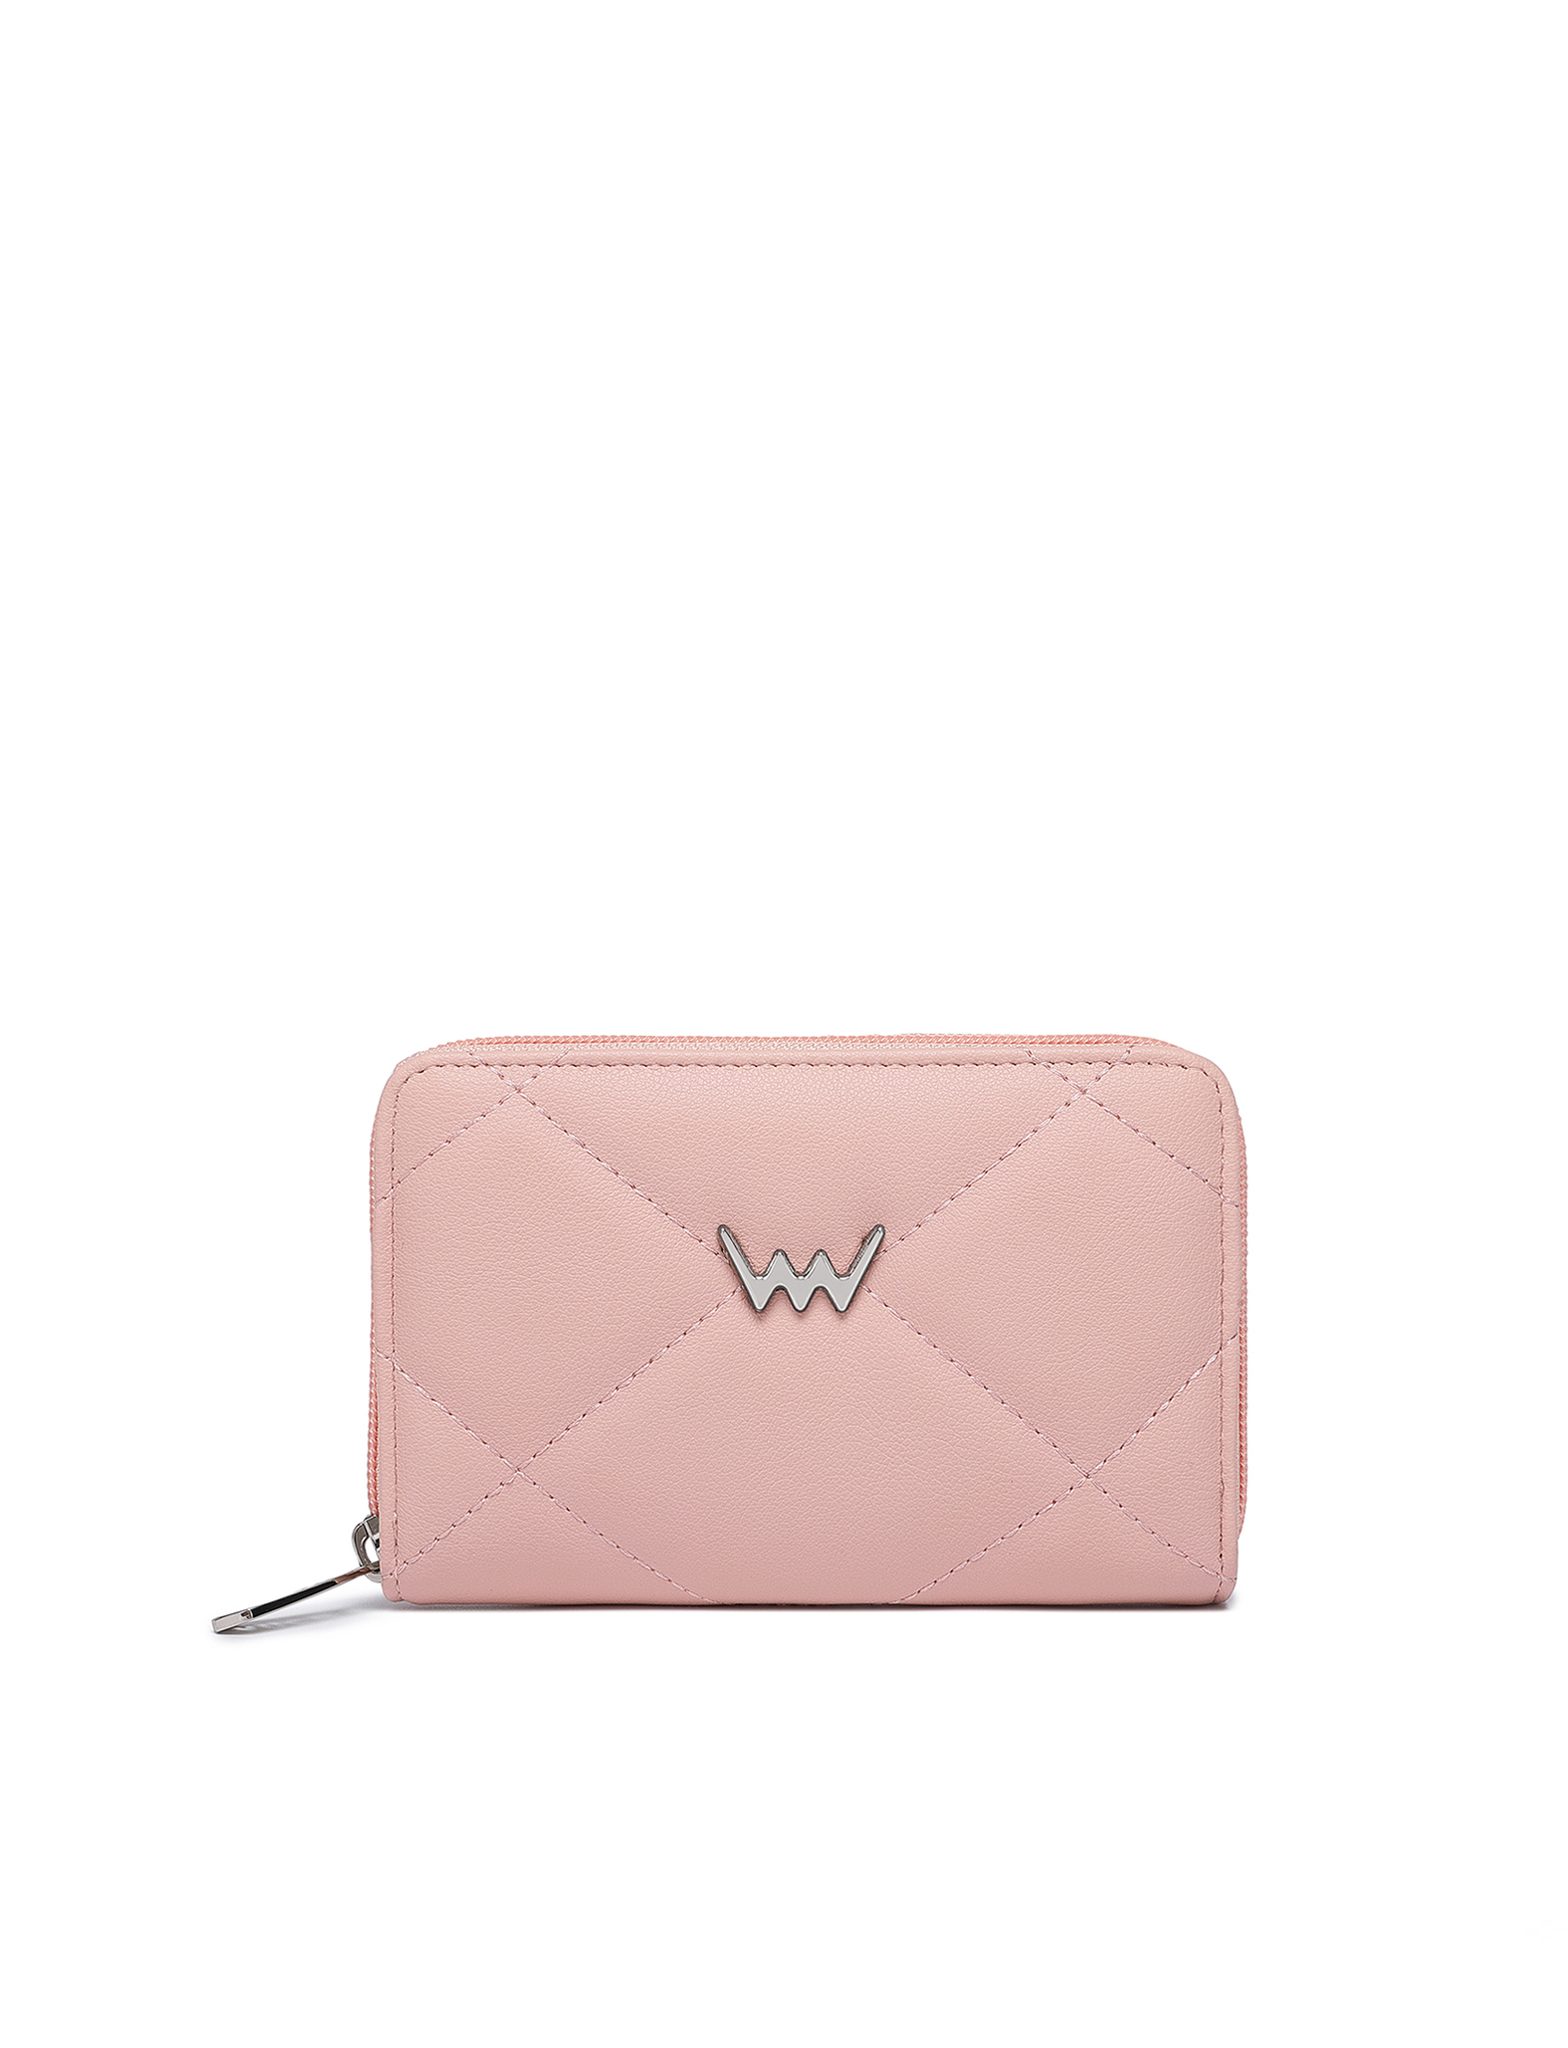 VUCH Lulu Pink Wallet